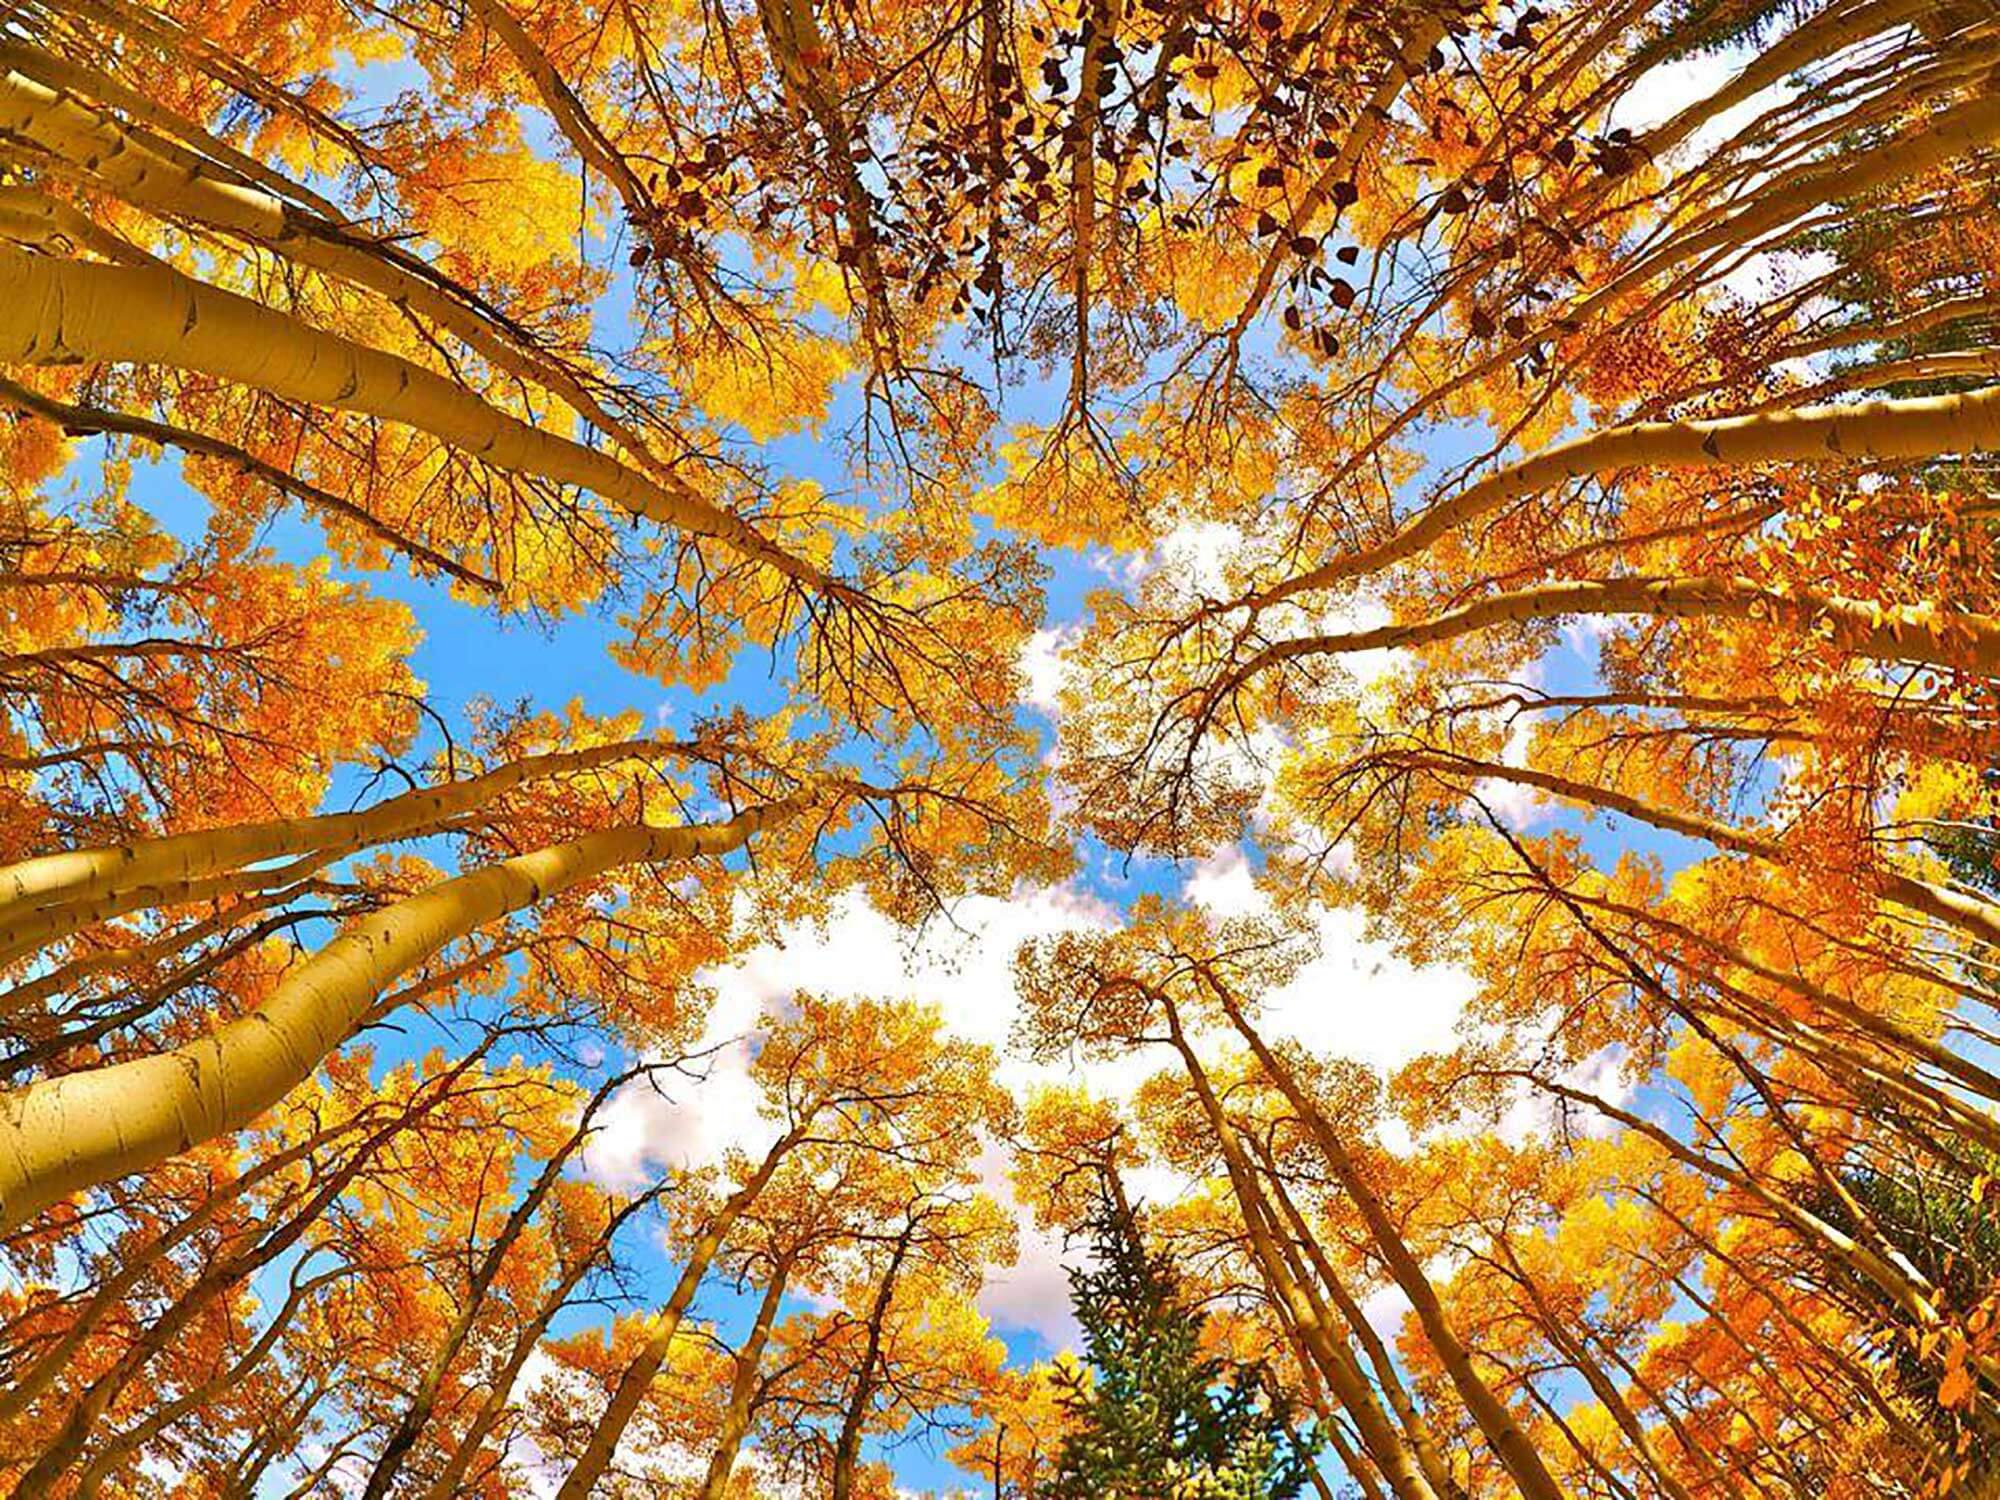 golden aspen leaves against blue sky